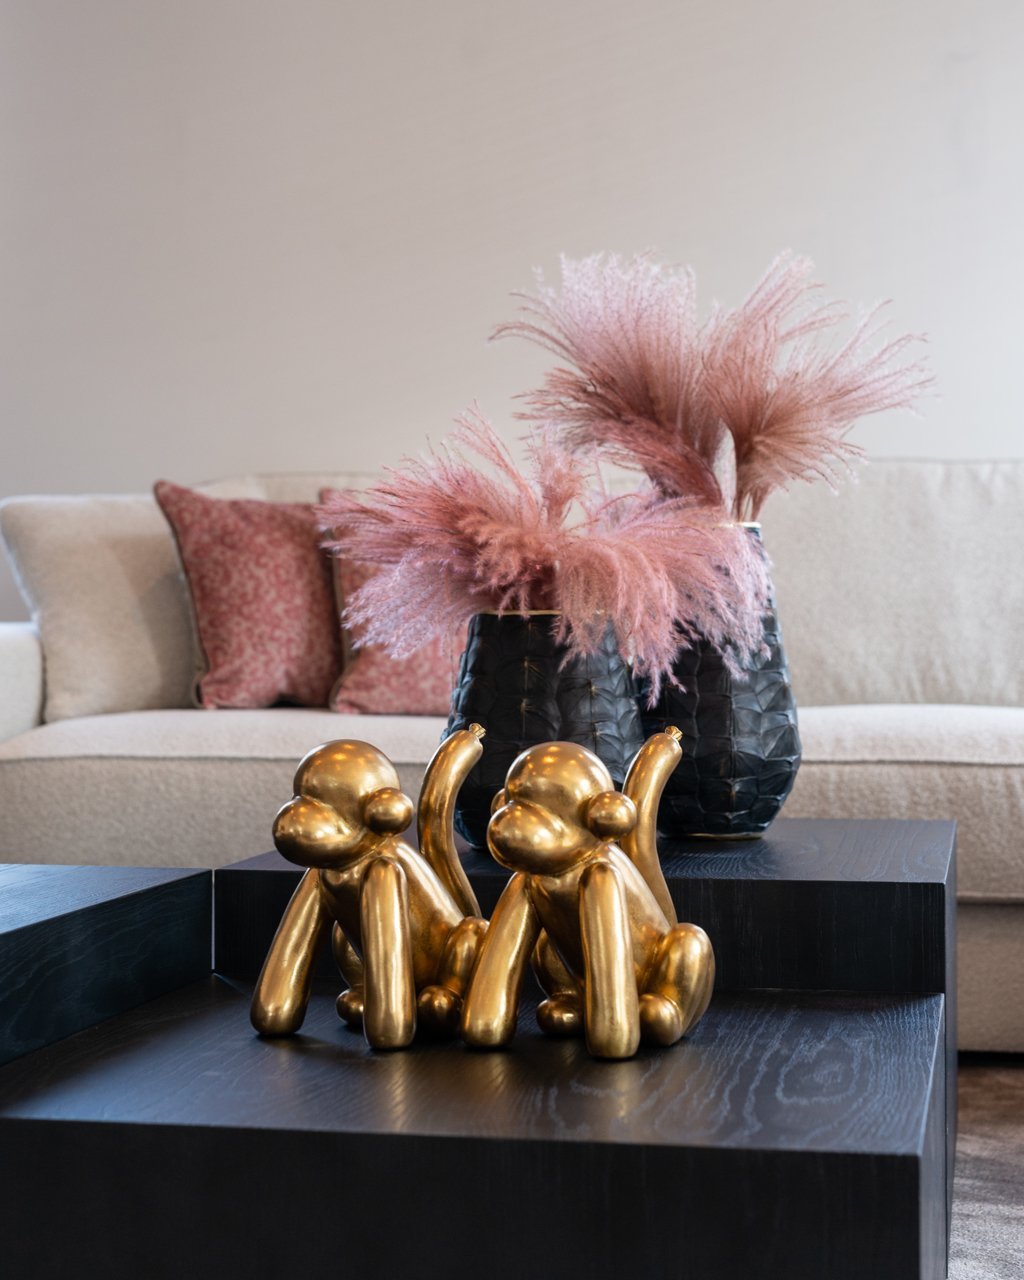 2 Ballon-aap sculpturen zorgen samen voor een leuke en speelse sfeer in je interieur